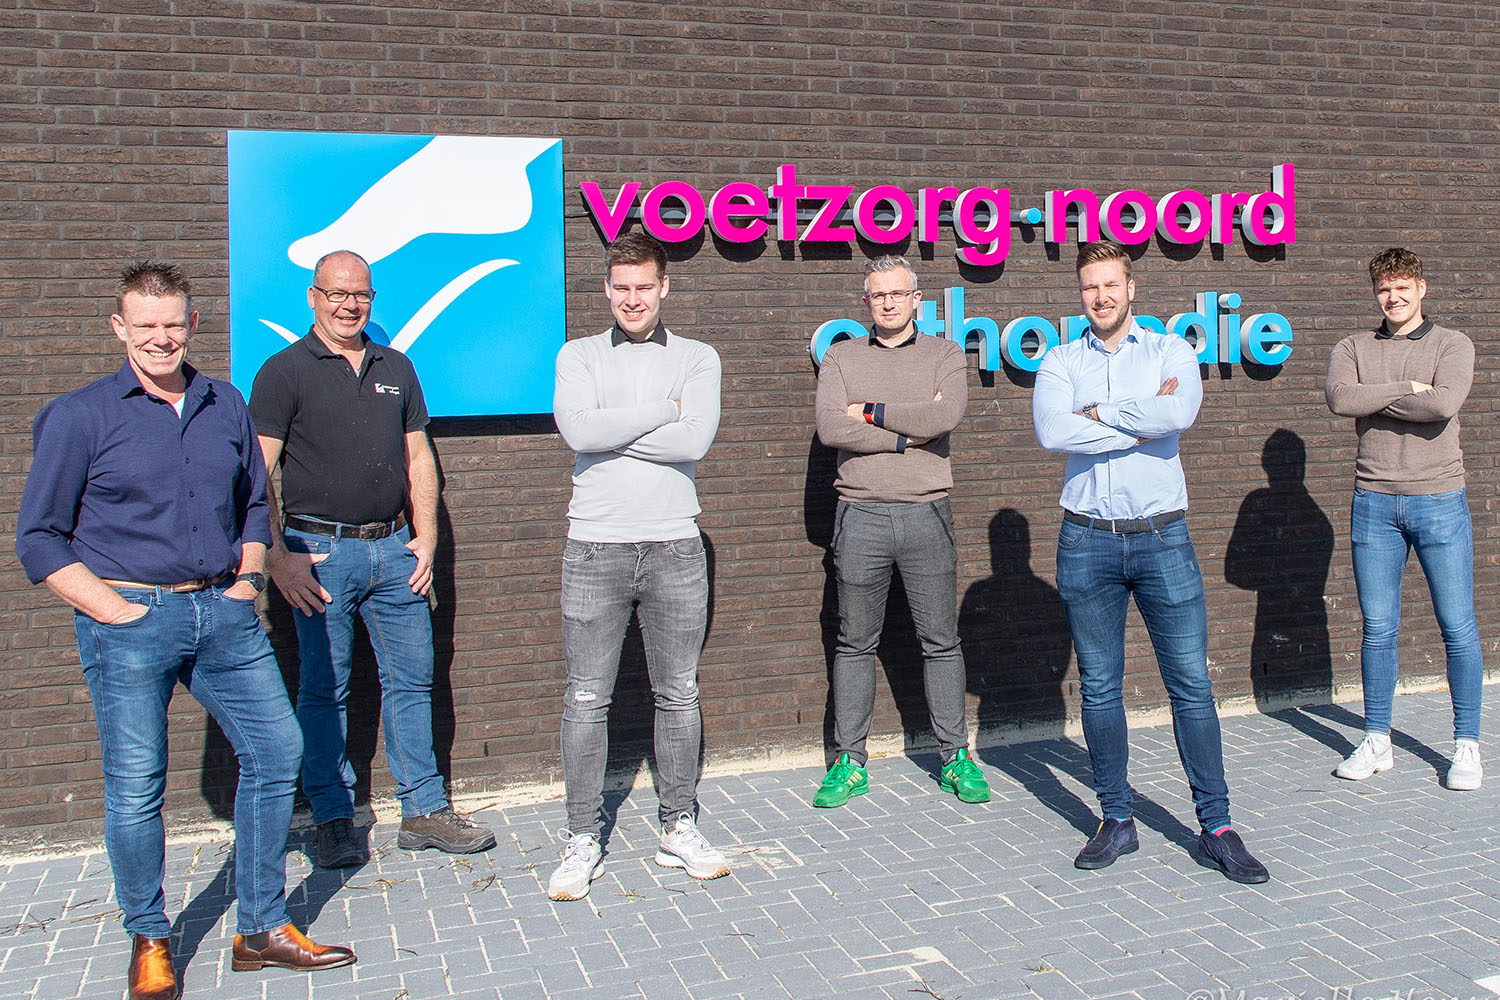 Team Voetzorg Noord